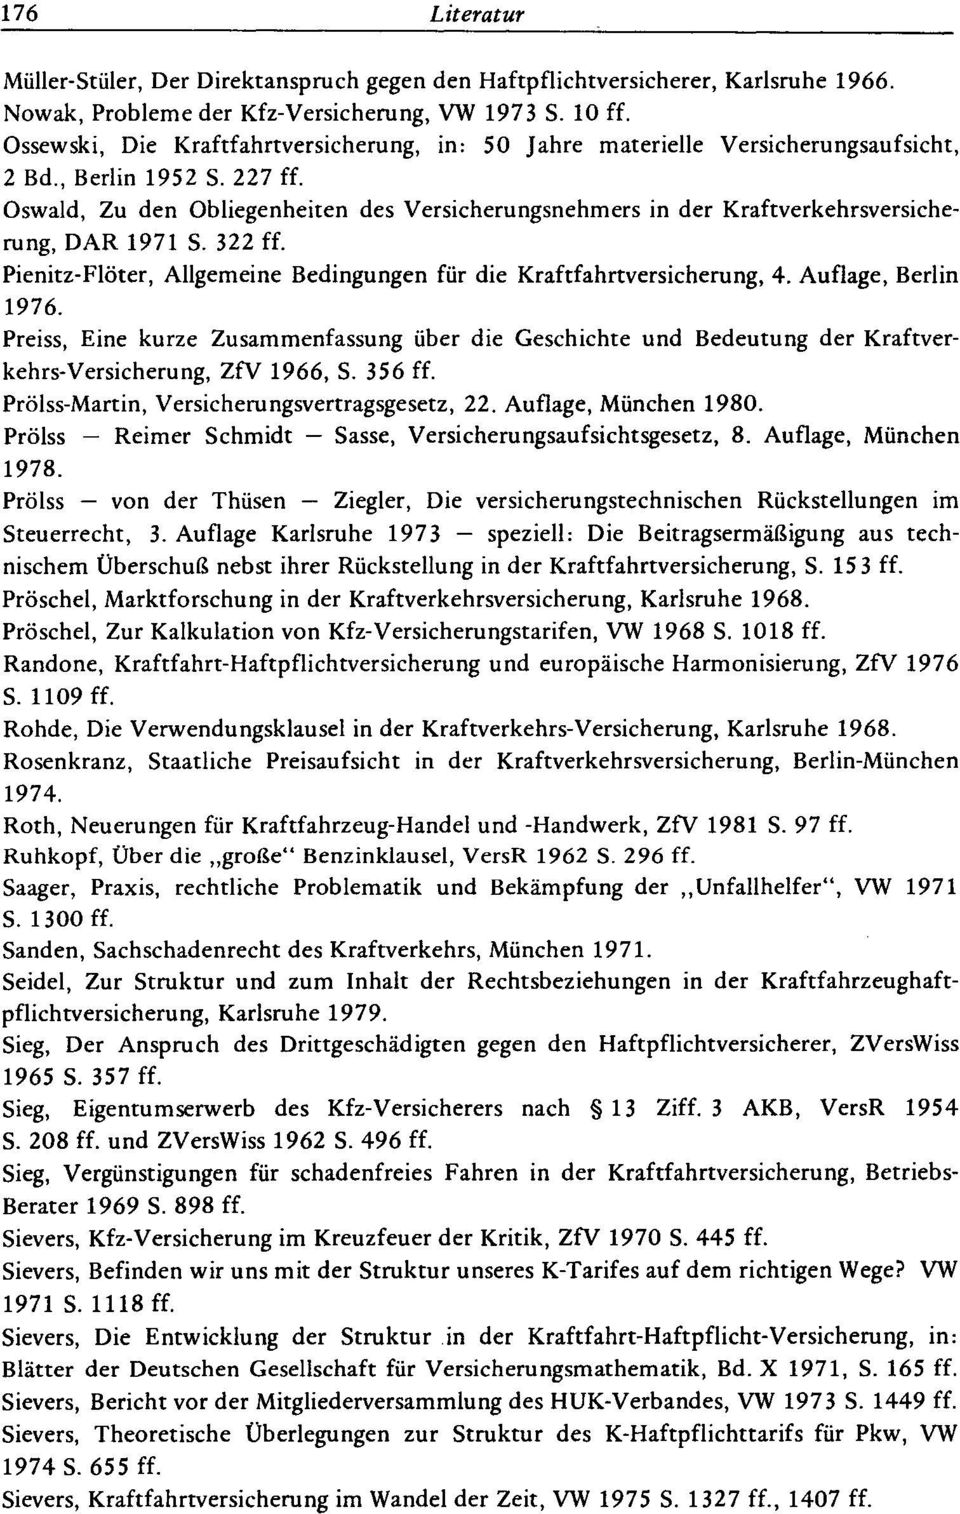 Oswald, Zu den Obliegenheiten des Versicherungsnehmers in der Kraftverkehrsversicherung, DAR 1971 S. 322 ff. Pienitz-Flöter, Allgemeine Bedingungen für die Kraftfahrtversicherung, 4.